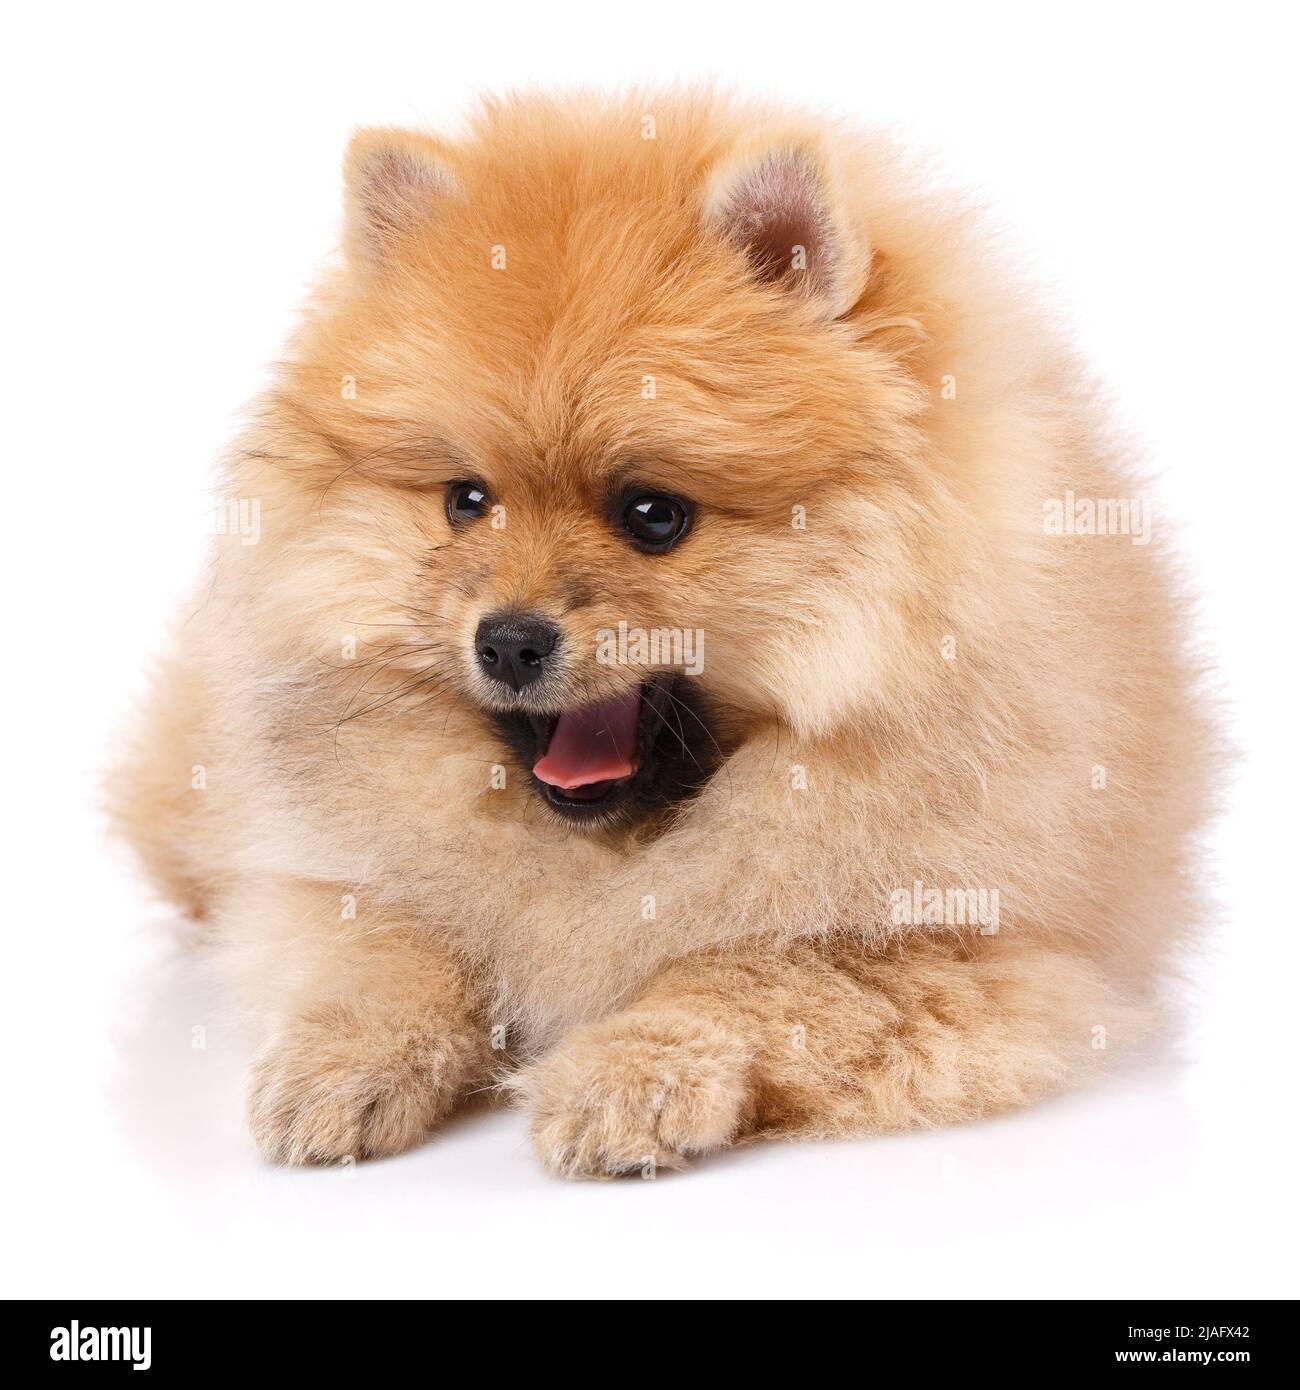 Hunderasse Pommersche Spitz auf weißem Hintergrund. Hund liegt mit offenem Mund und schaut zur Seite. Stockfoto